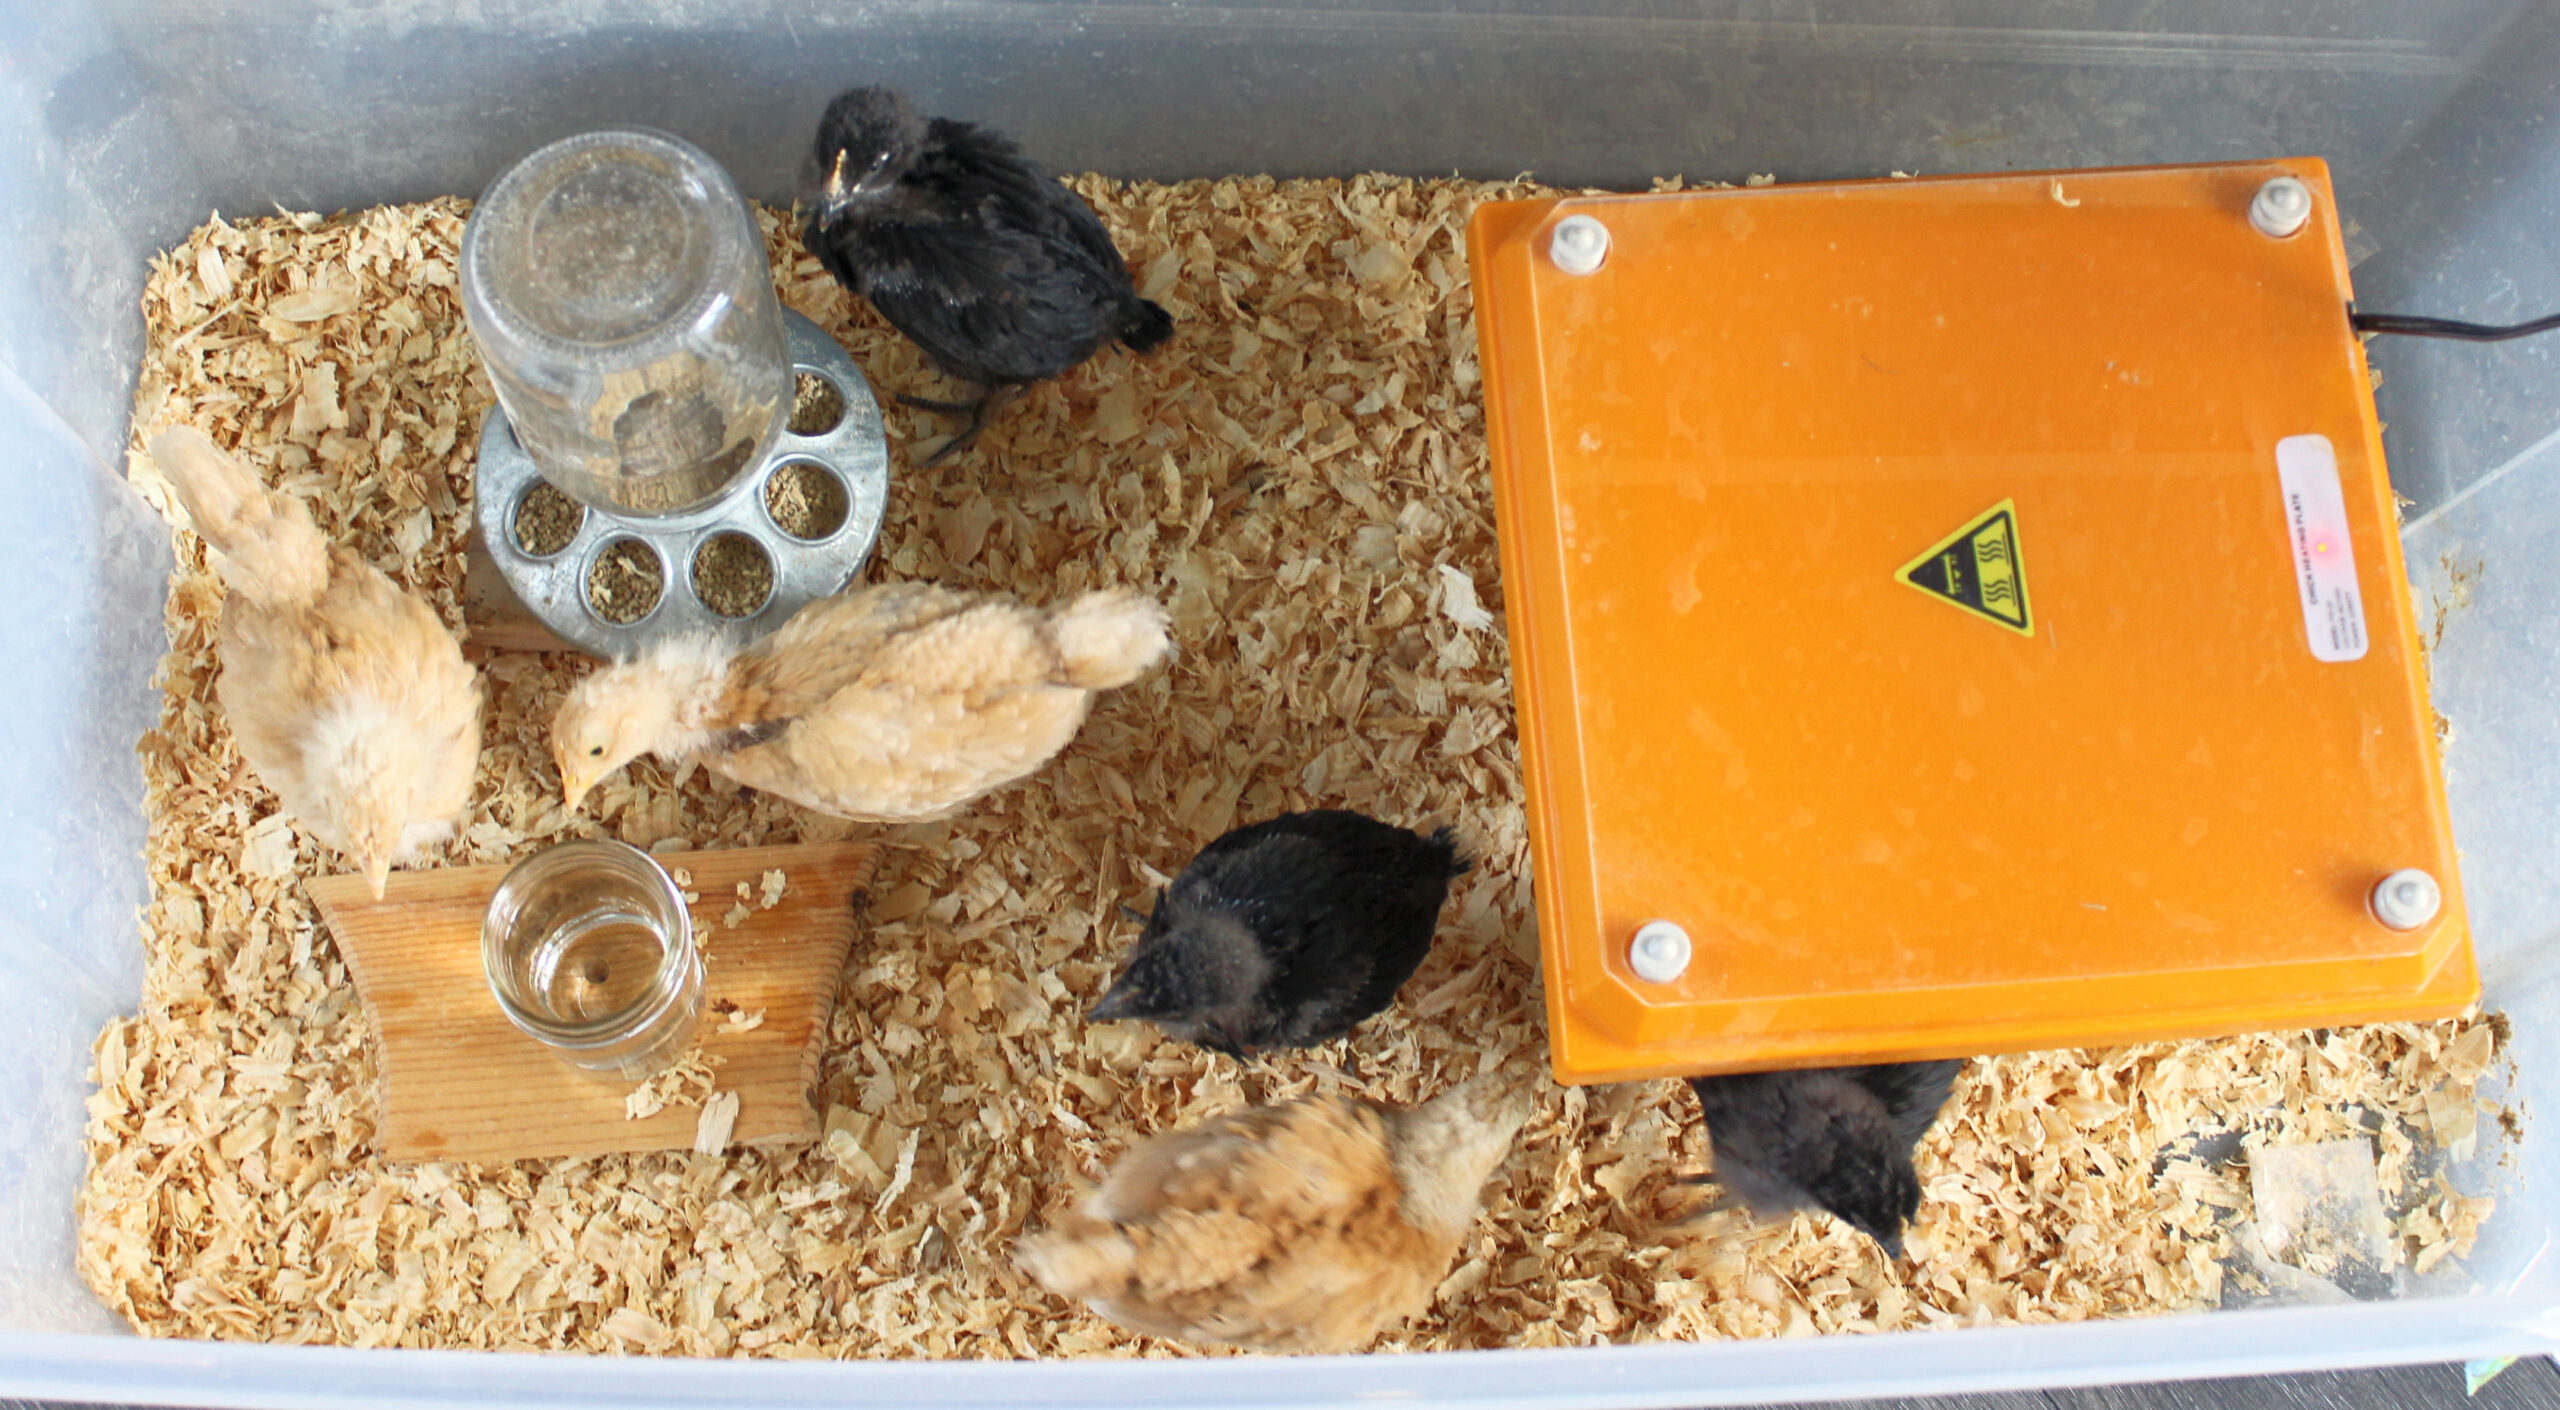 Three week old chicks in brooder